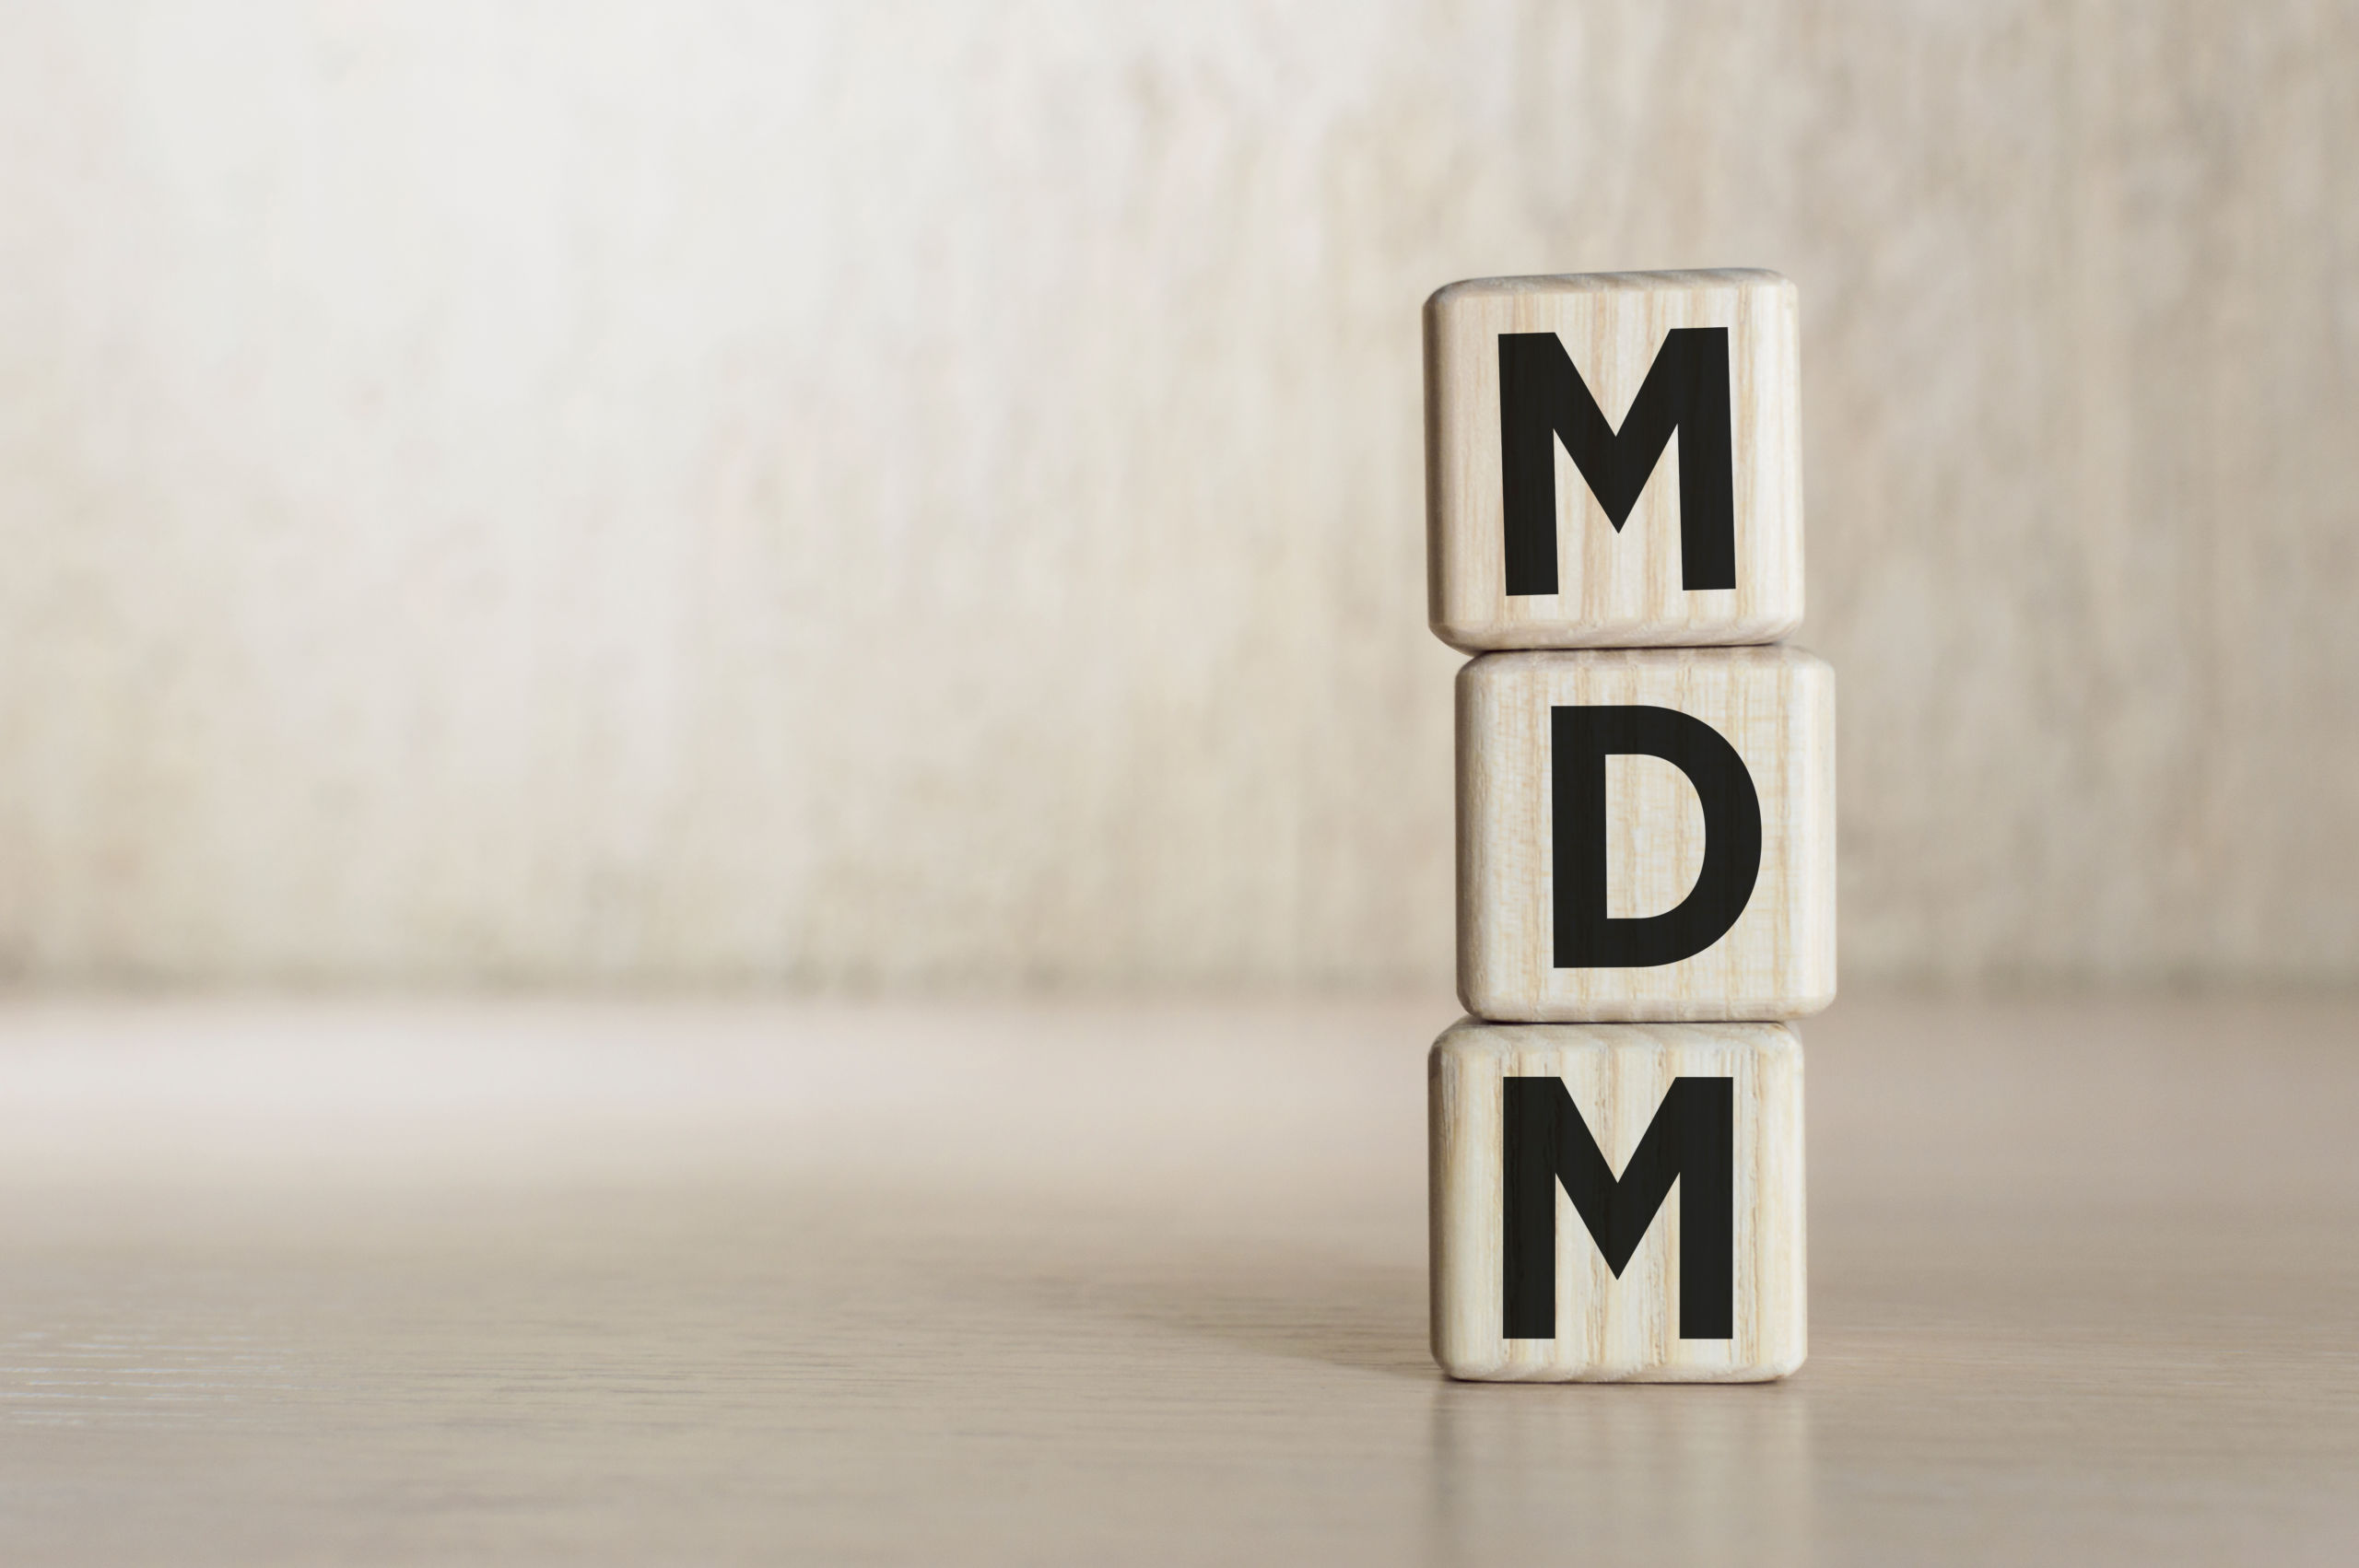 Choisir une solution PIM ou MDM pour la gestion des données ?